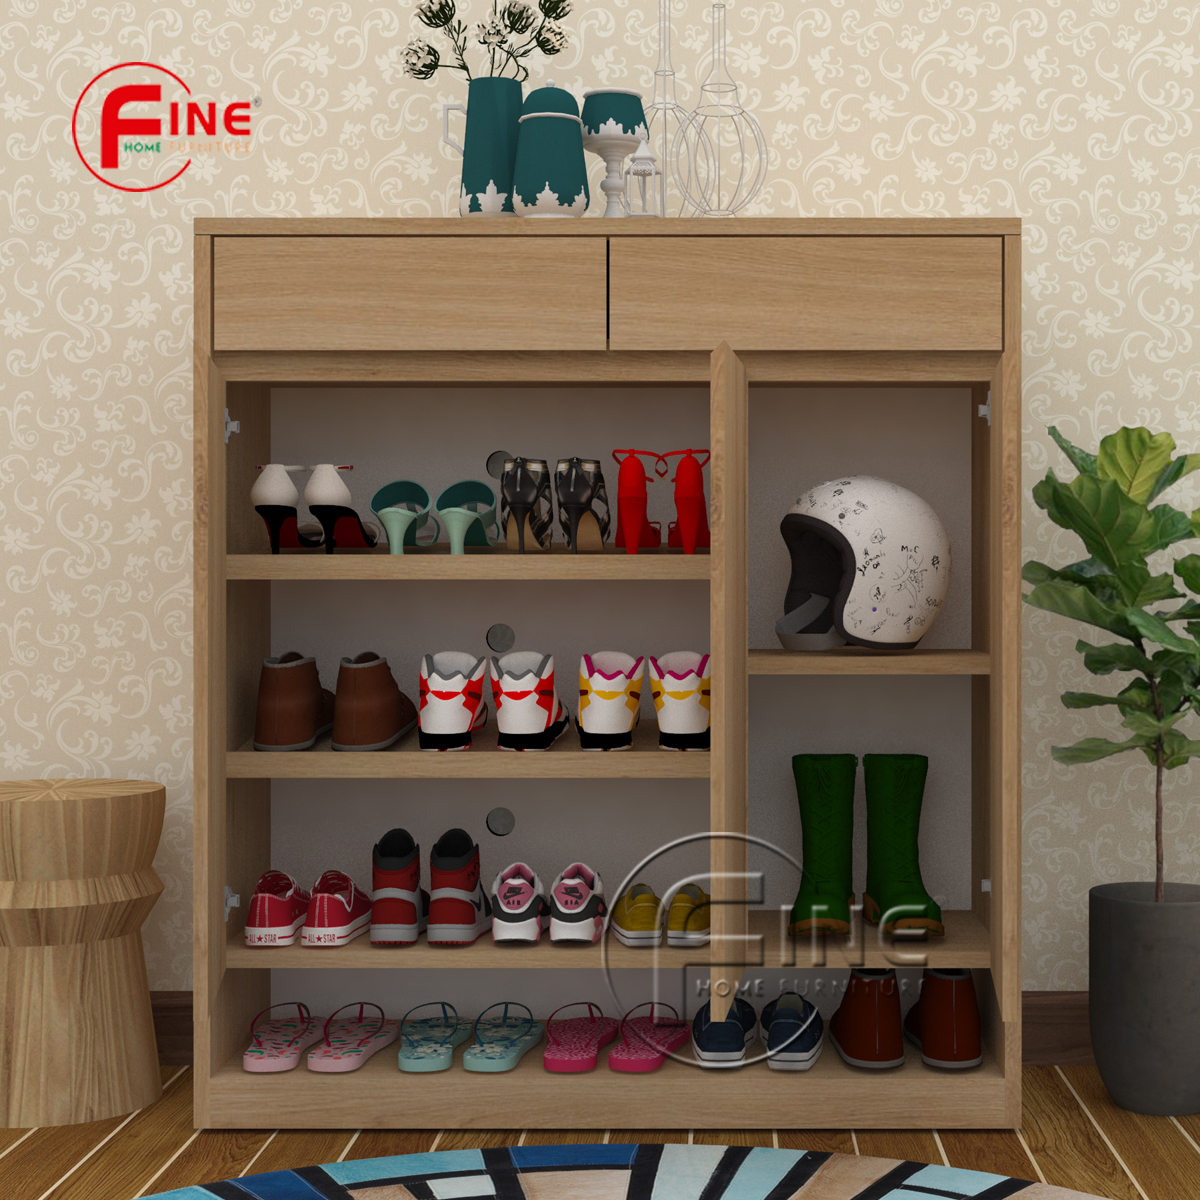 Tủ Giày Dép FINE hiện đại sang trọng phong cách thời trang FTG018 phù hợp cho Căn Hộ, Nhà Phố